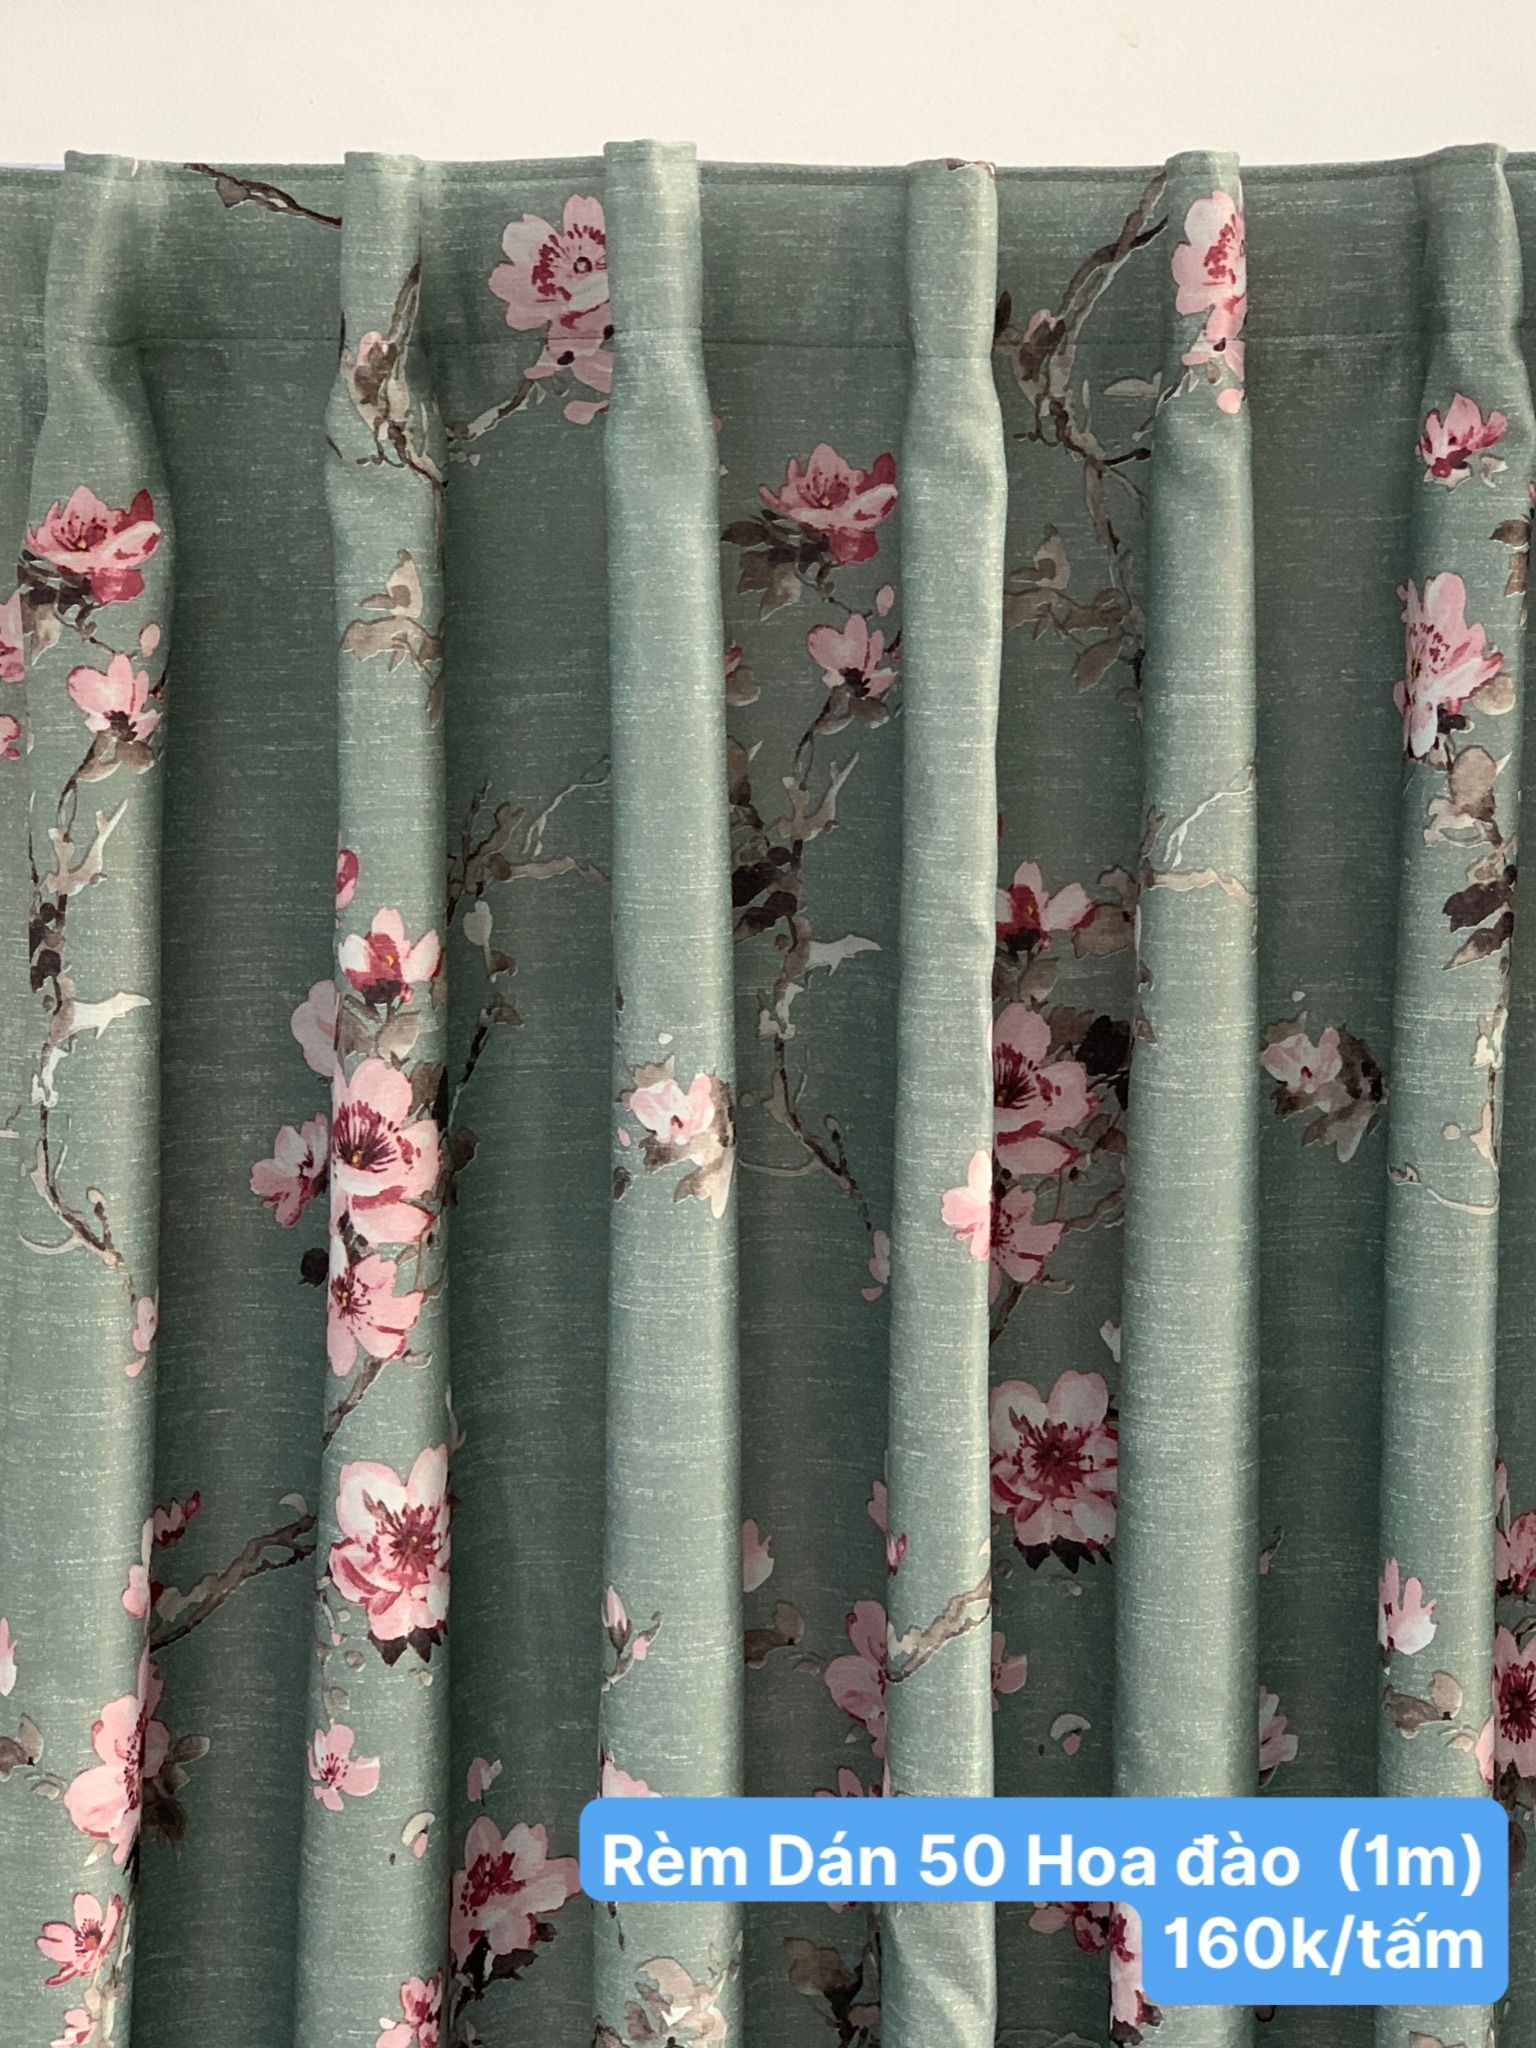  Rèm chống nắng May sẵn - Rèm Gấm 50 Họa tiết, màu trơn - Rèm cửa kiểu Dán tường giá rẻ BMT 